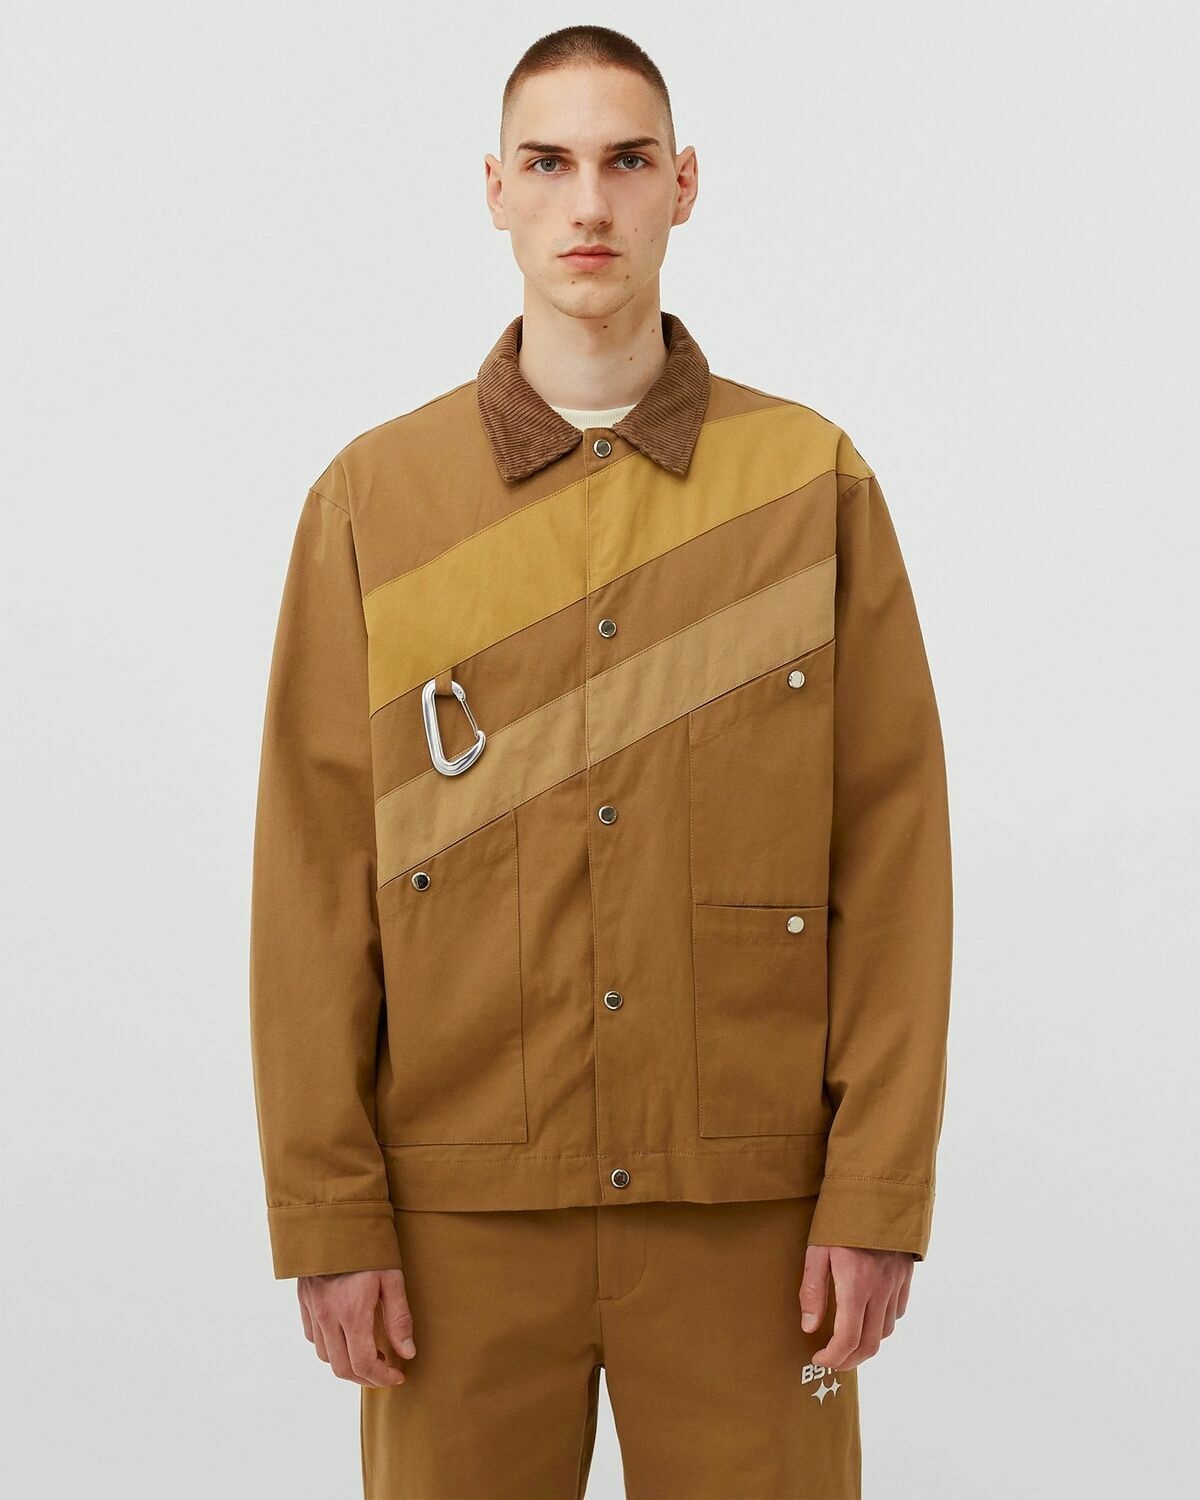 Bstn Brand Workwear Warm Up Jacket Brown - Mens - Denim Jackets/Overshirts